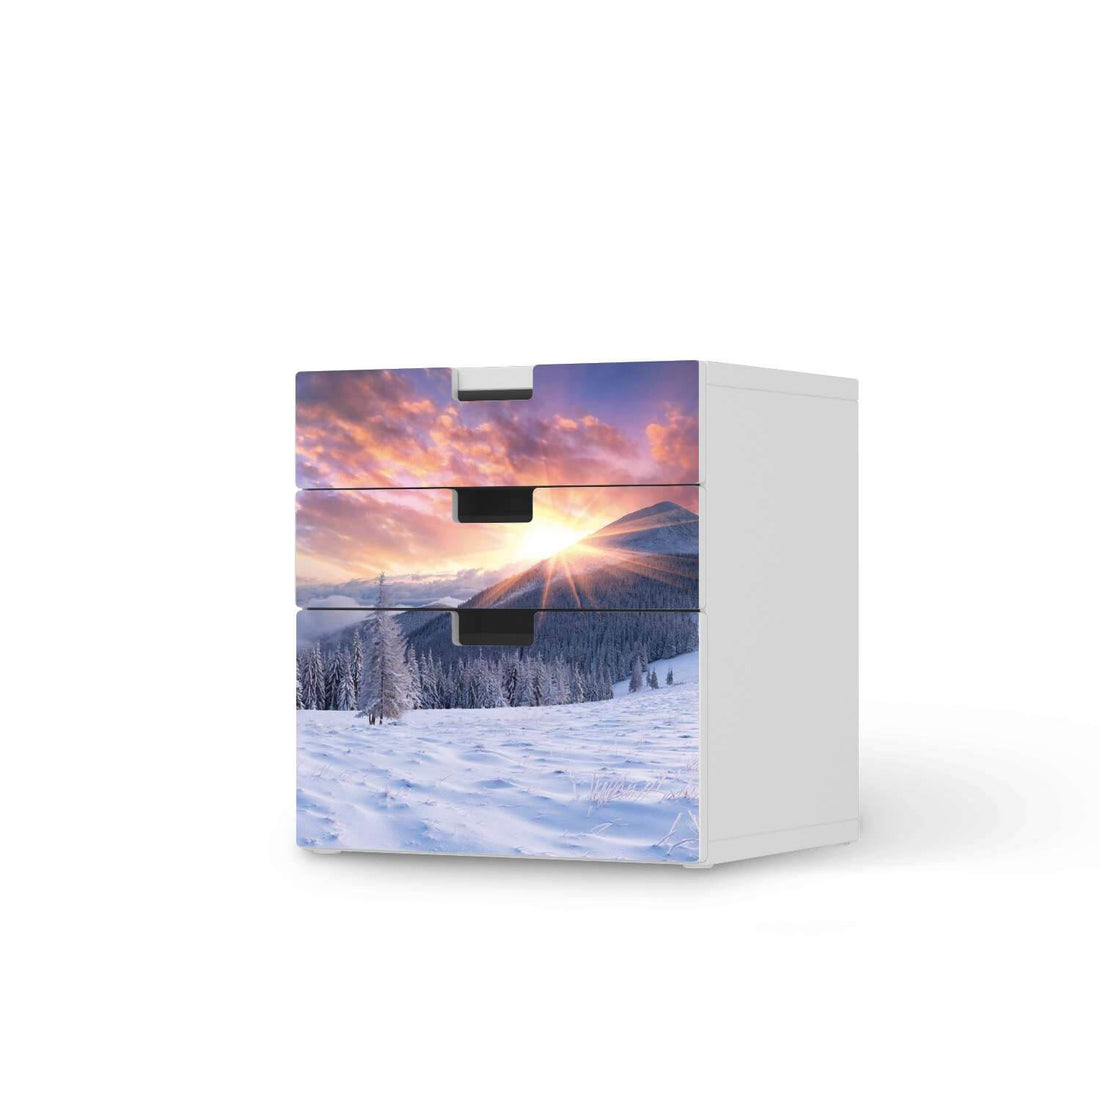 Folie für Möbel Zauberhafte Winterlandschaft - IKEA Stuva Kommode - 3 Schubladen (Kombination 1)  - weiss